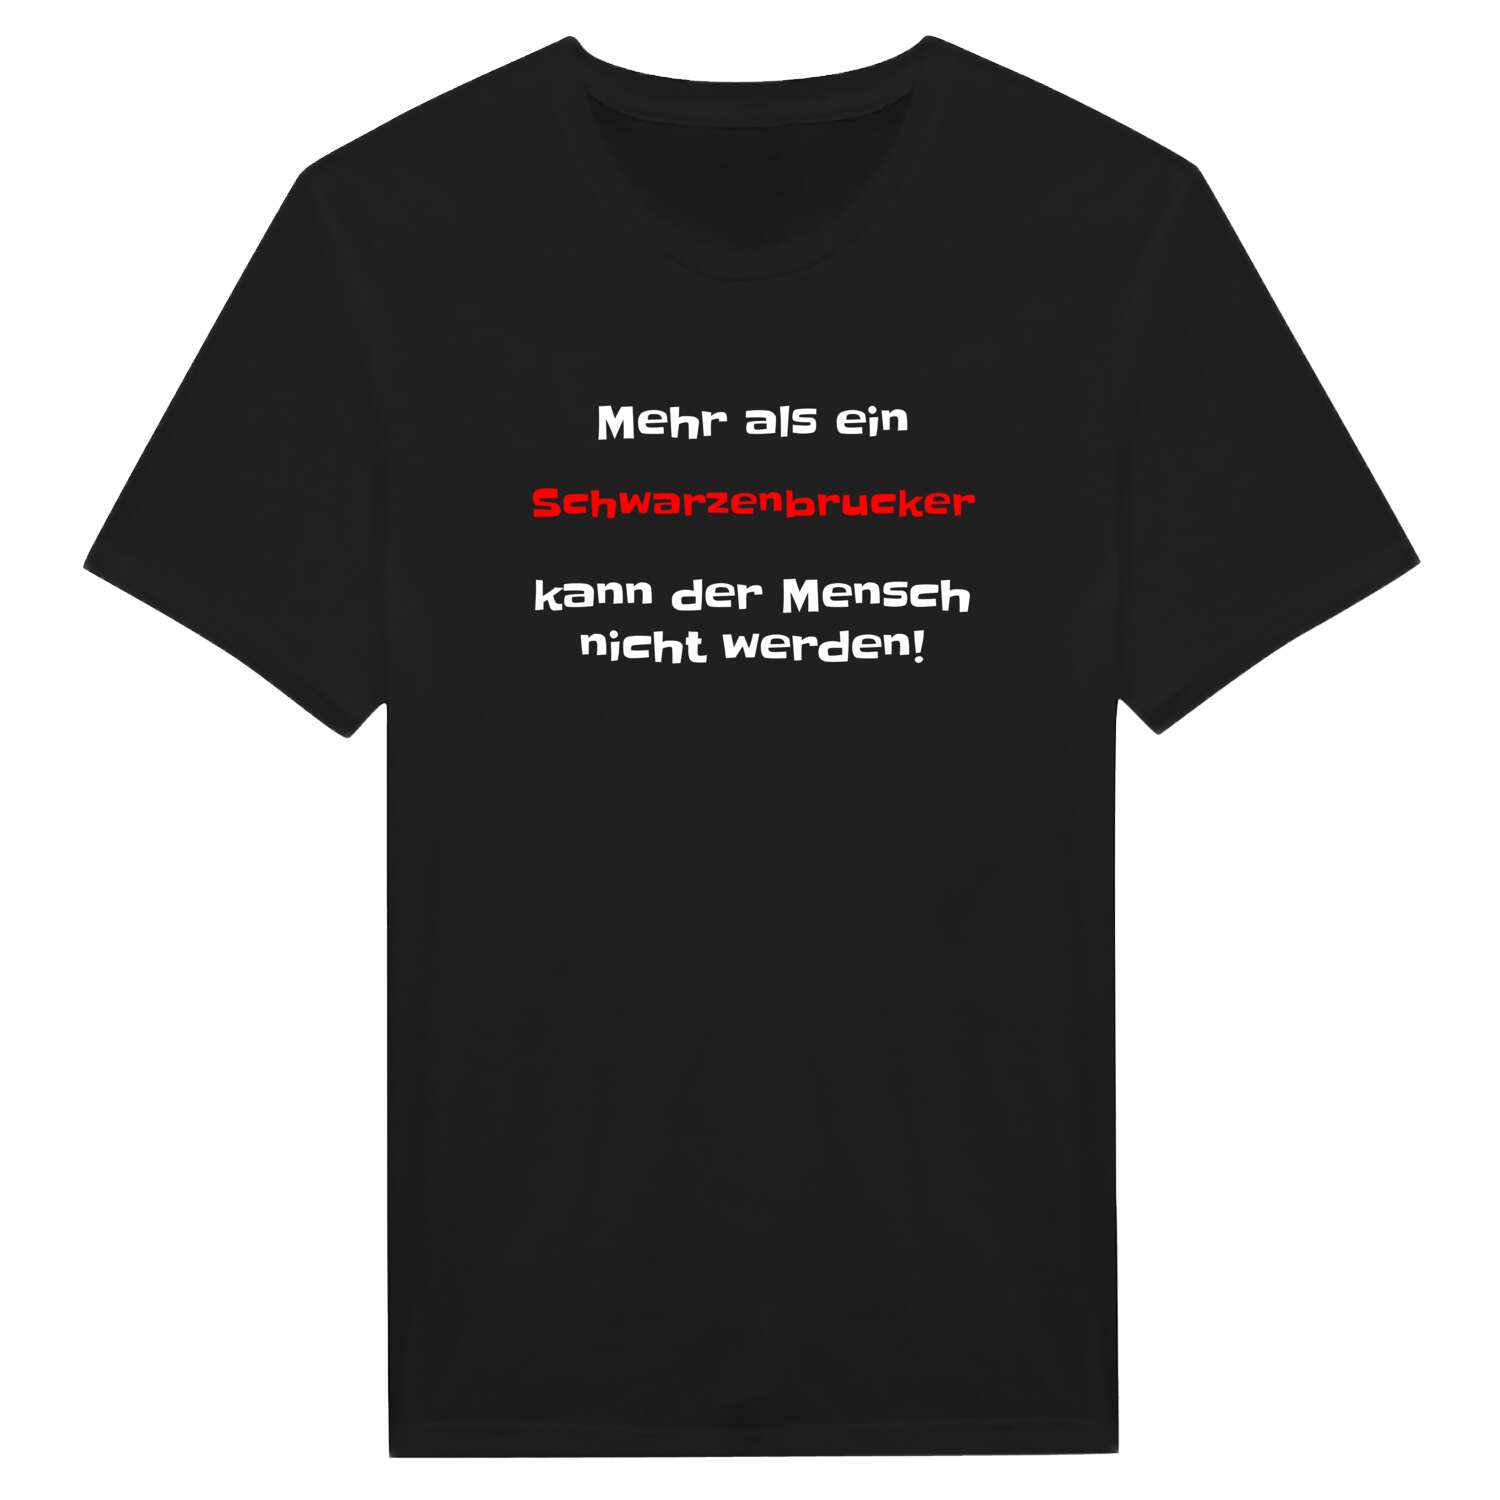 Schwarzenbruck T-Shirt »Mehr als ein«